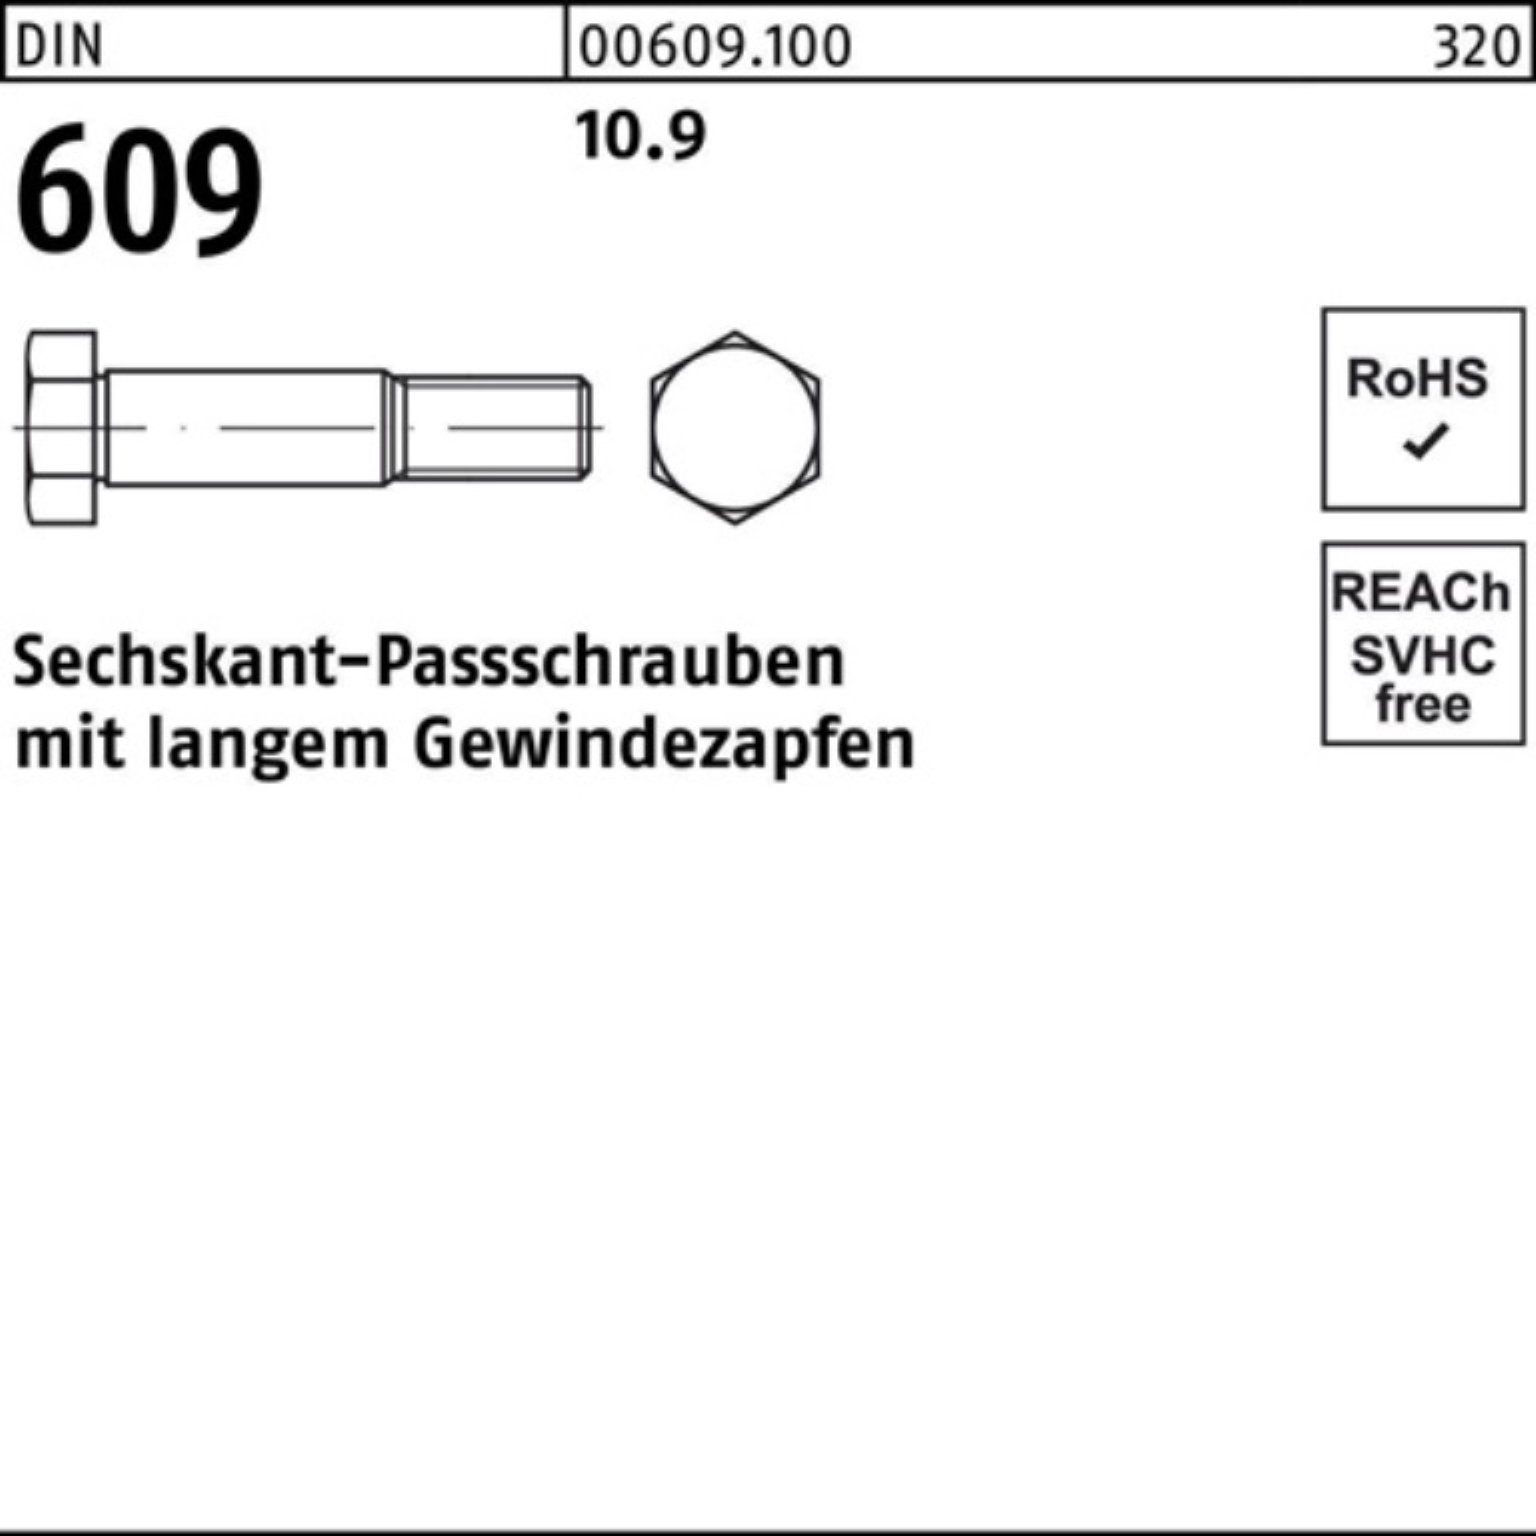 DIN langem Pack 100er Sechskantpassschraube 609 Reyher Schraube M20x 110 Gewindezapfen